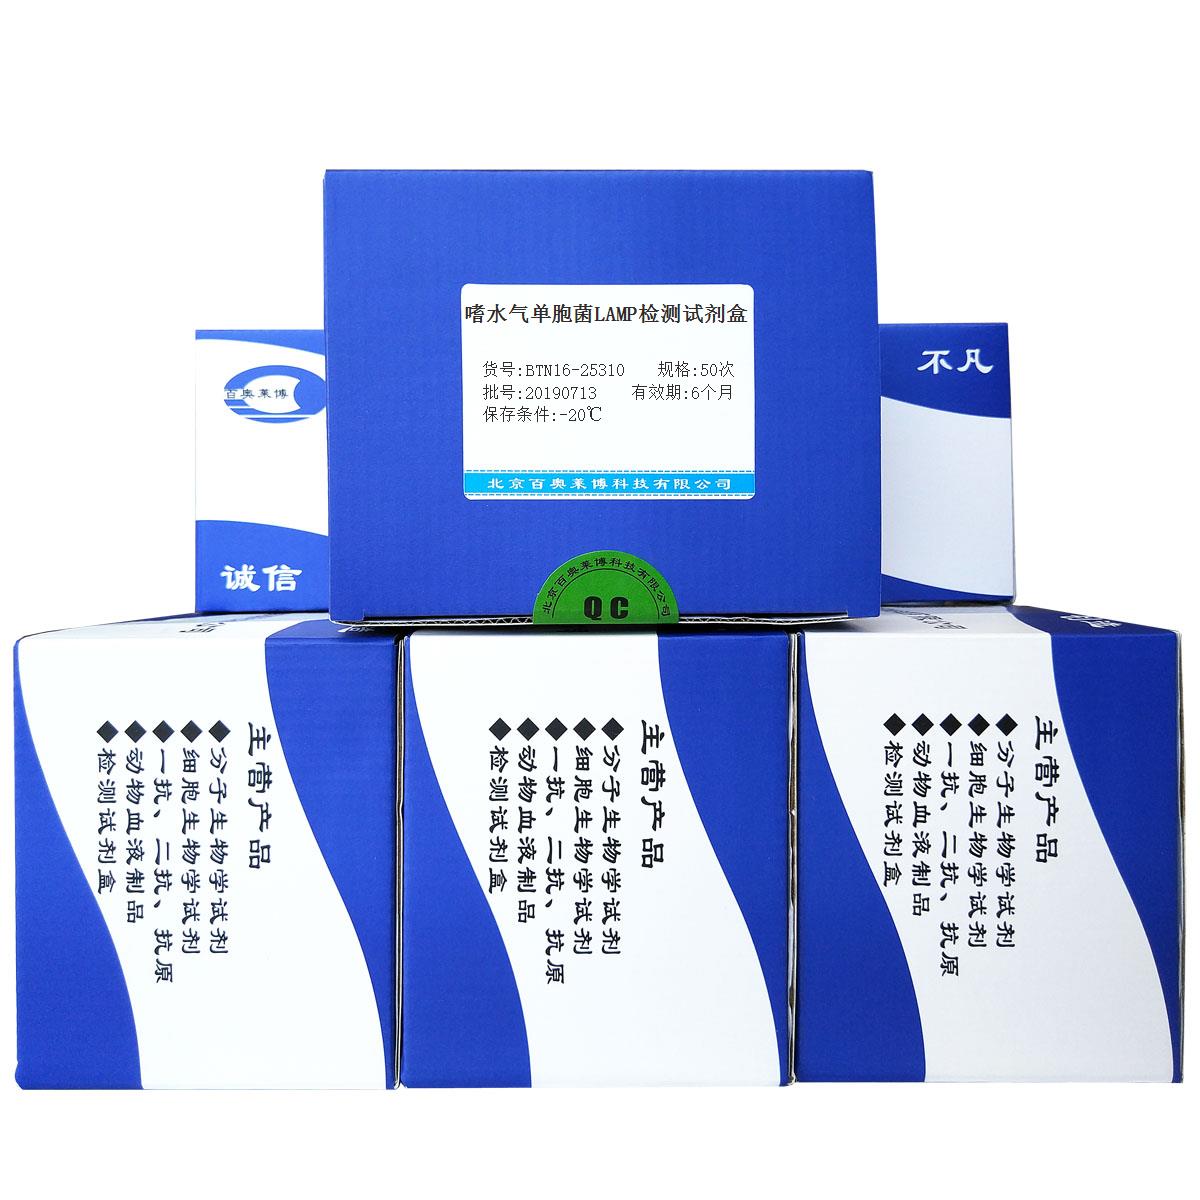 嗜水气单胞菌LAMP检测试剂盒北京价格